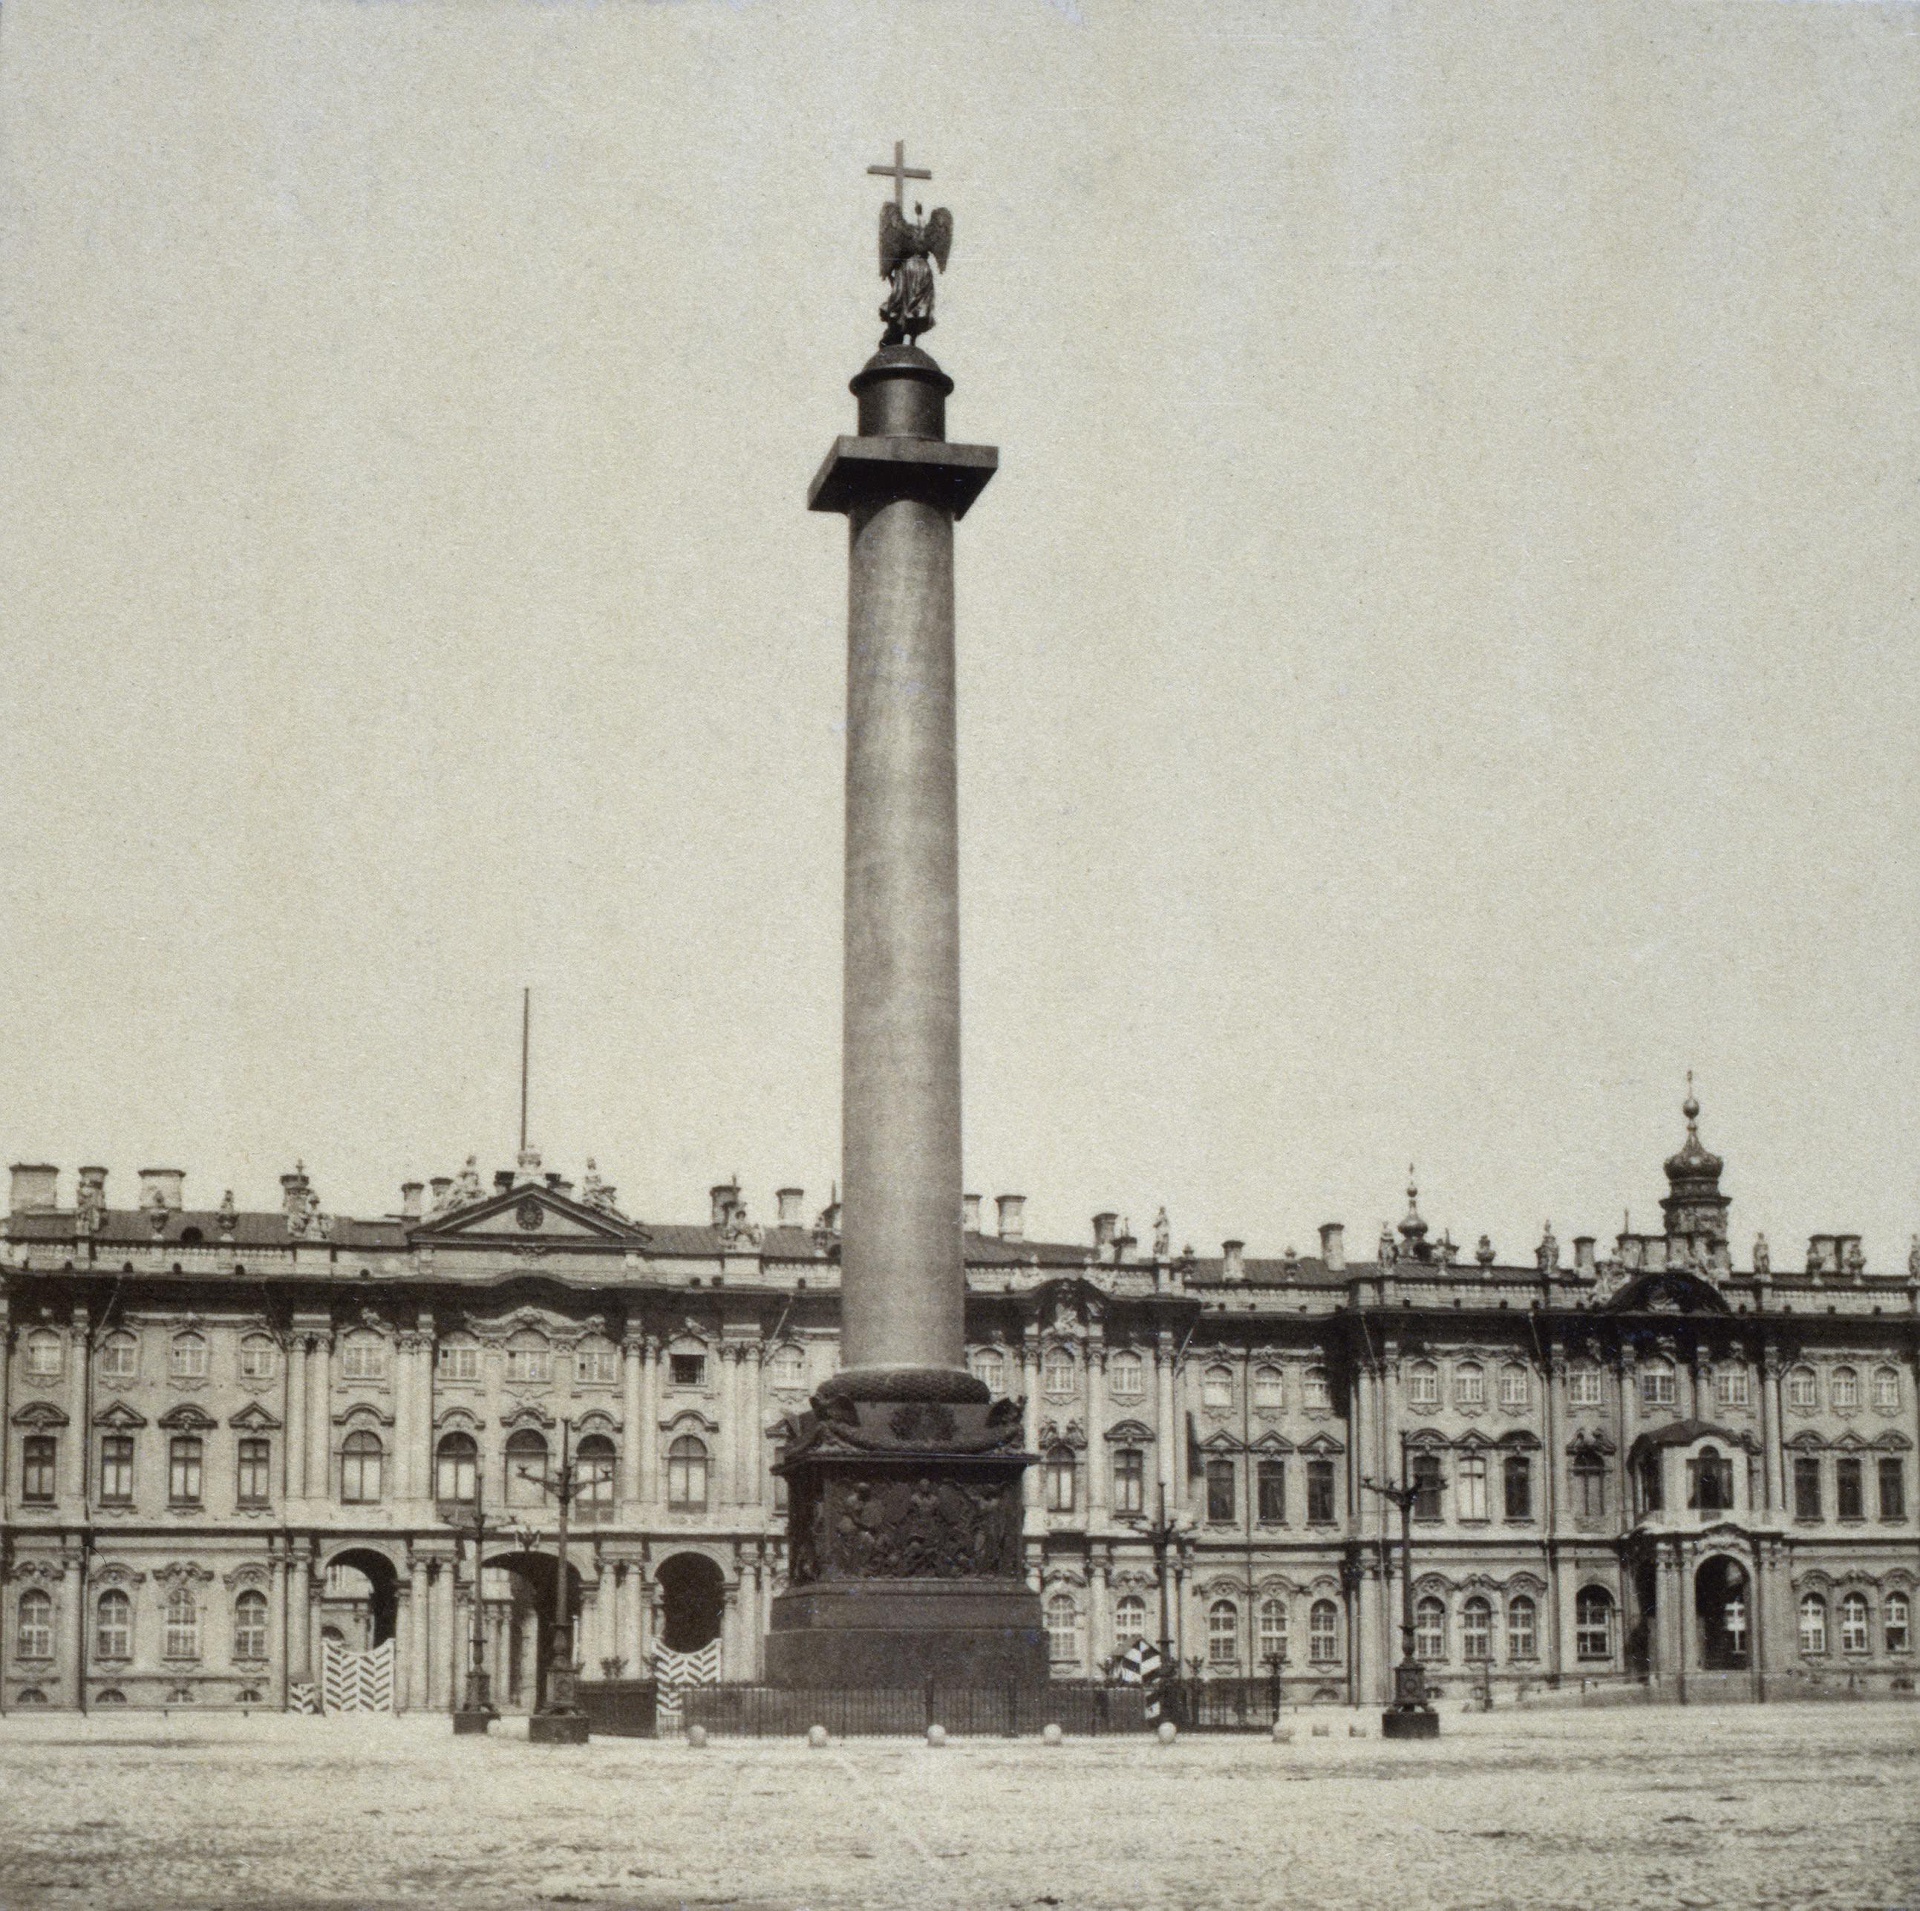 дворцовая площадь в санкт петербурге старые